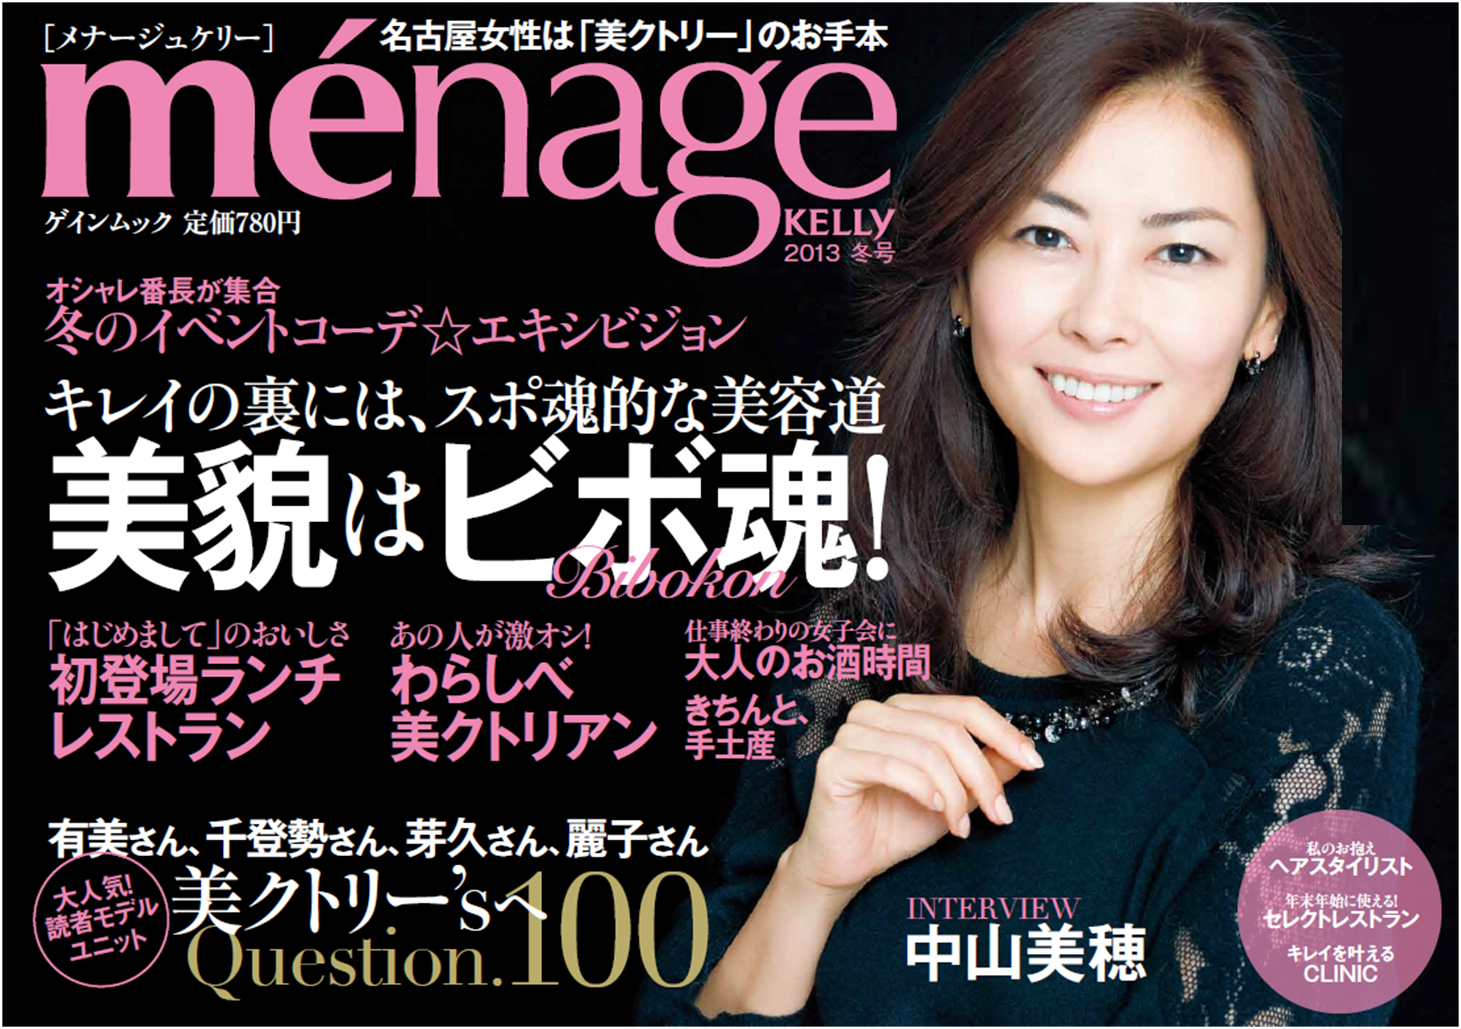 ménage KELLY : 名古屋女性は「美クトリー」のお手本 2013春号-eastgate.mk